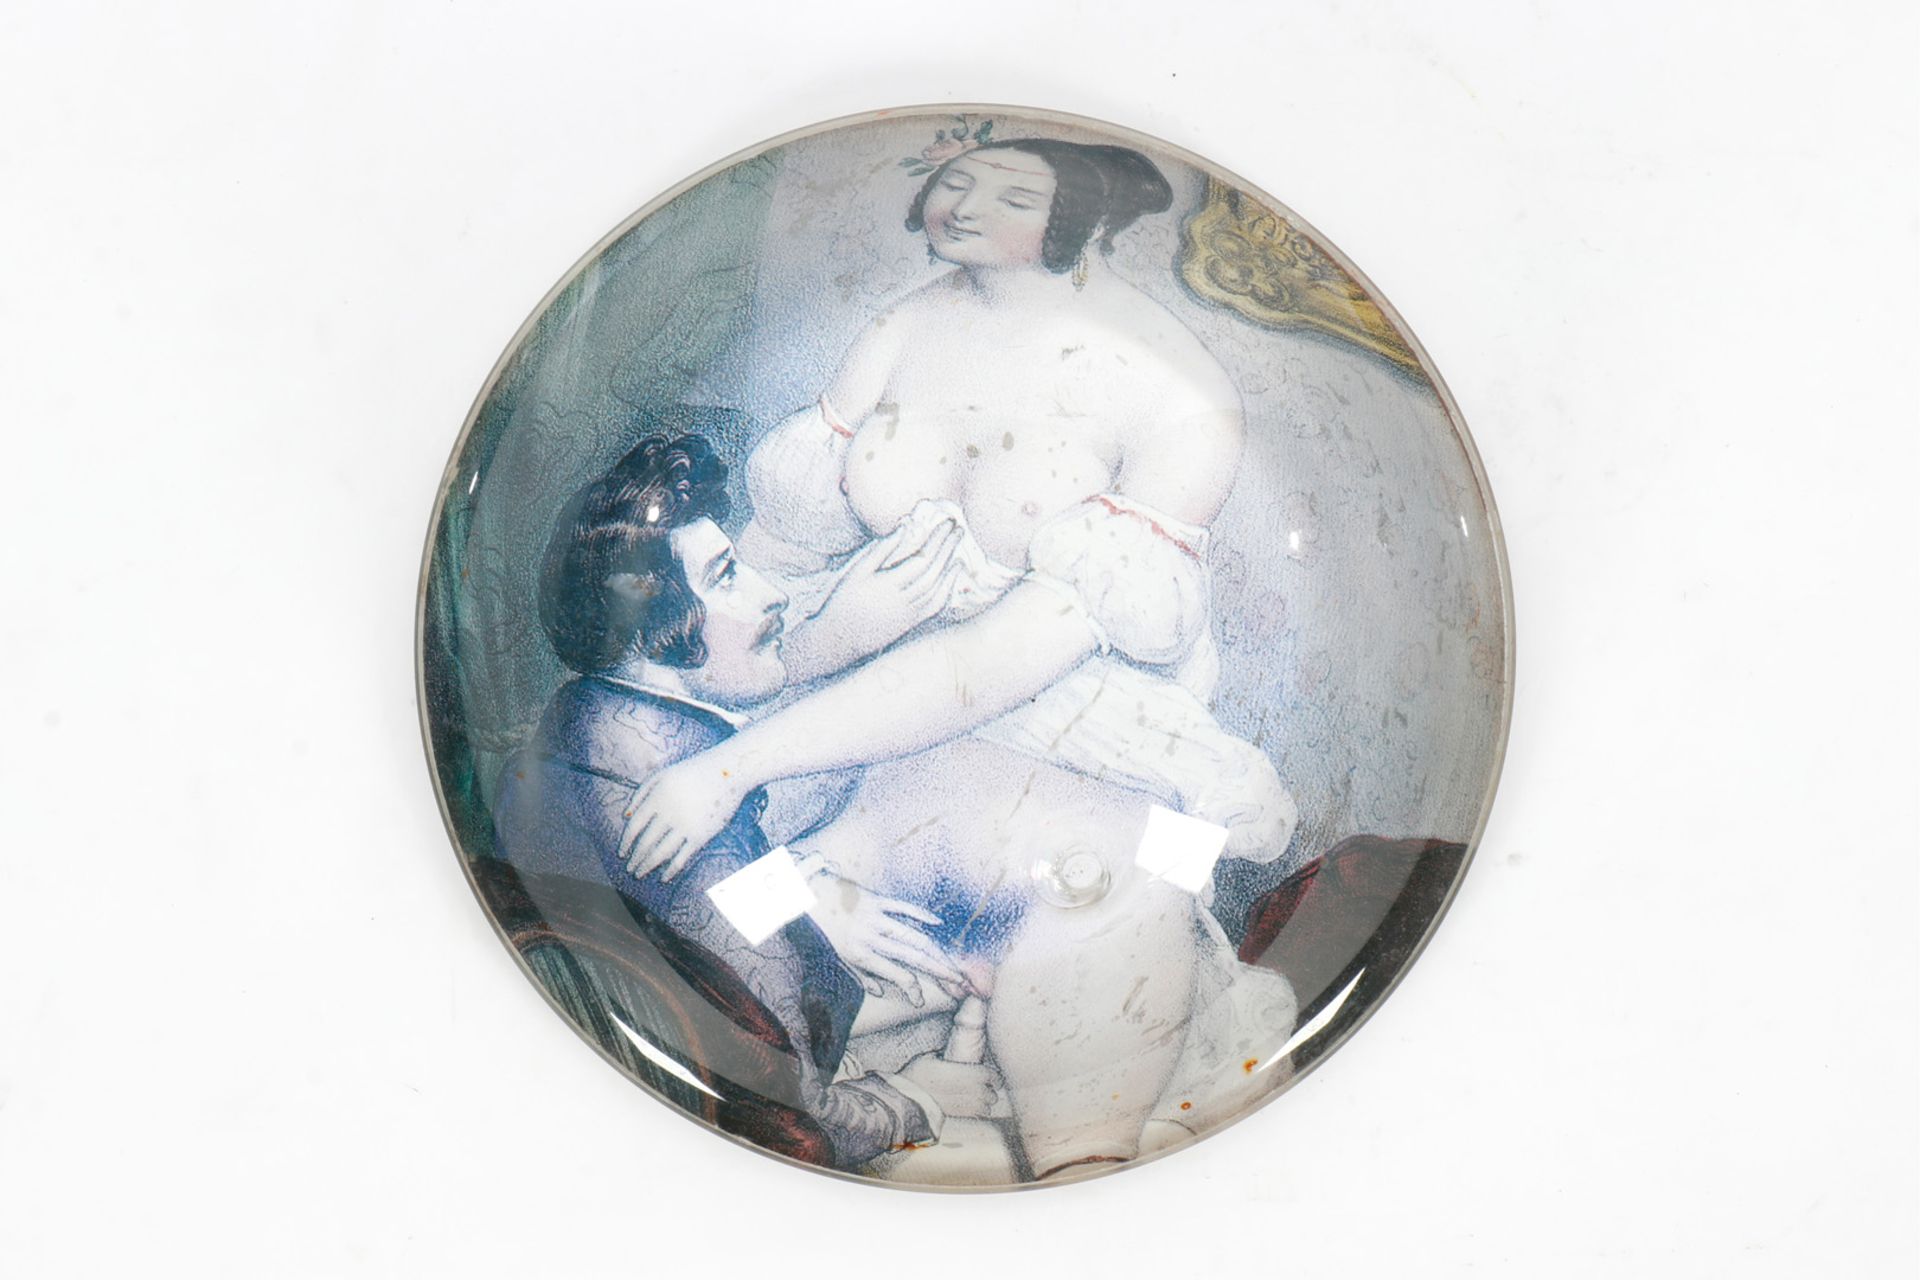 Halbglas als Briefbeschwerer, mit erotischem Motiv, Durchmesser 15